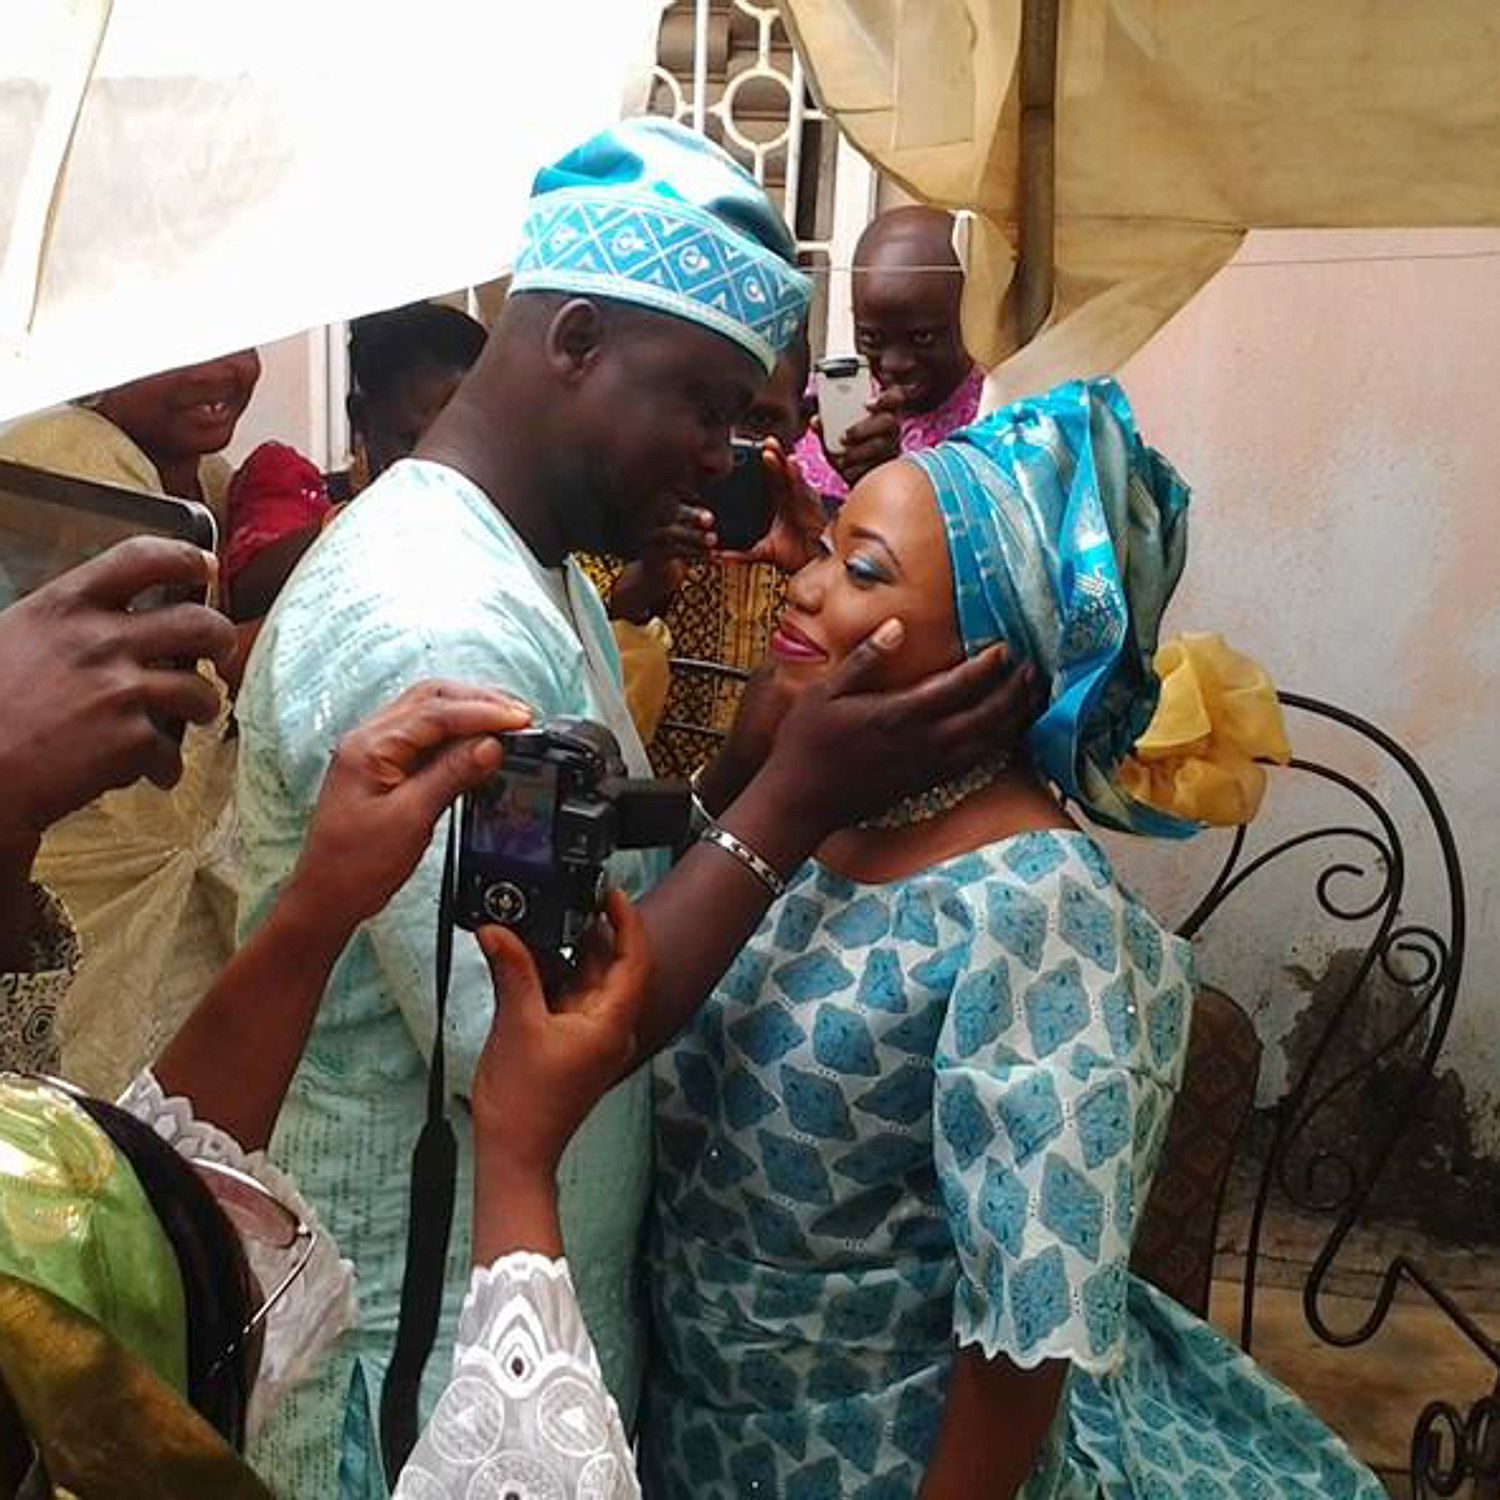 My new wife. Свадьба в Нигерии. Женщины из Нигерии. Браки в Нигерии.